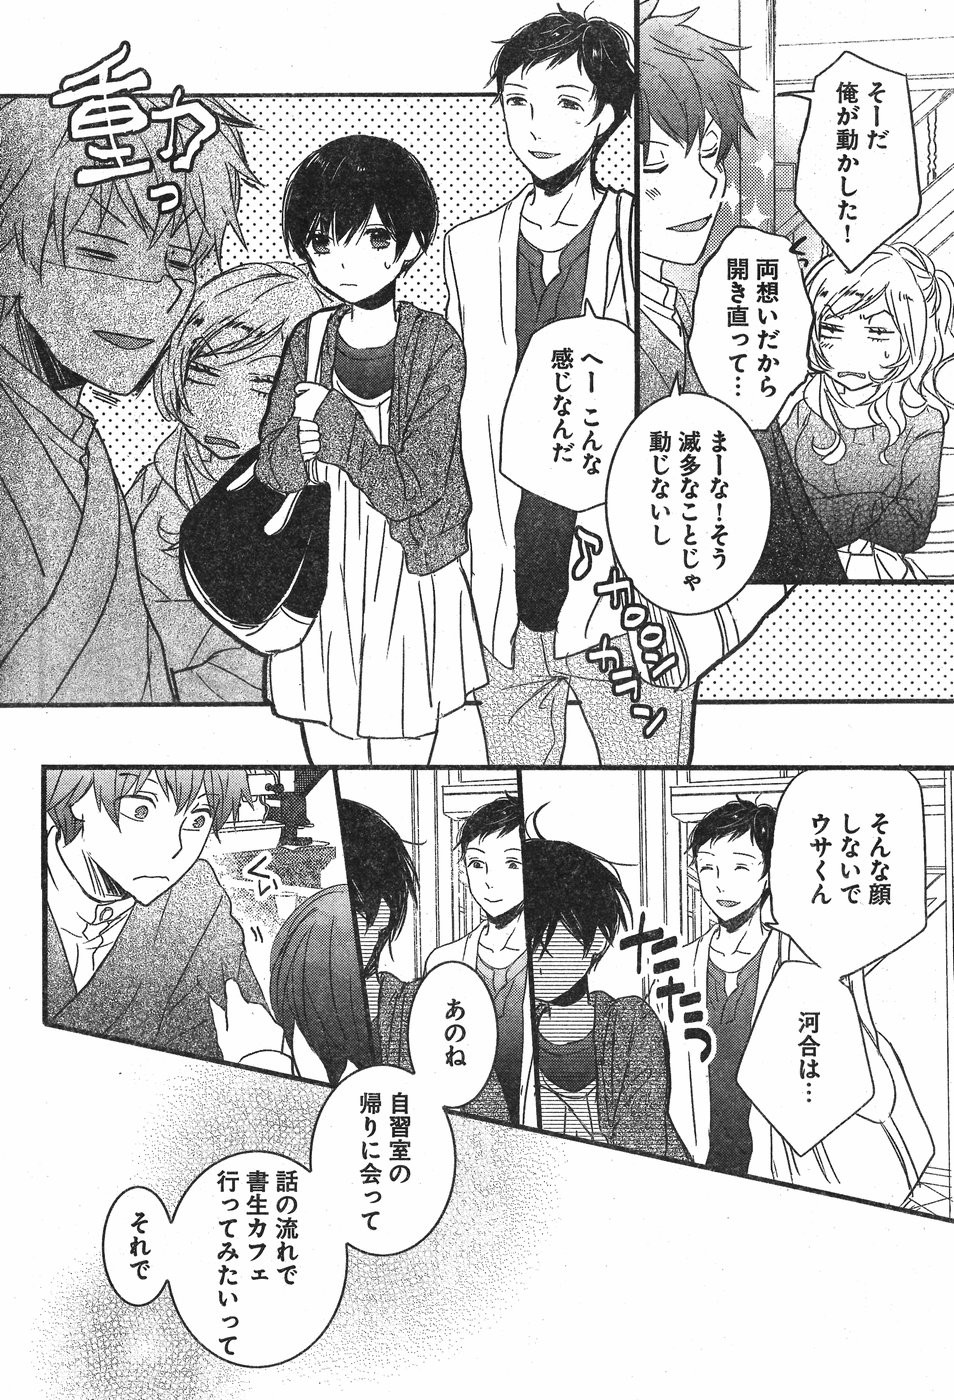 Bokura wa Minna Kawaisou - Chapter 84 - Page 16